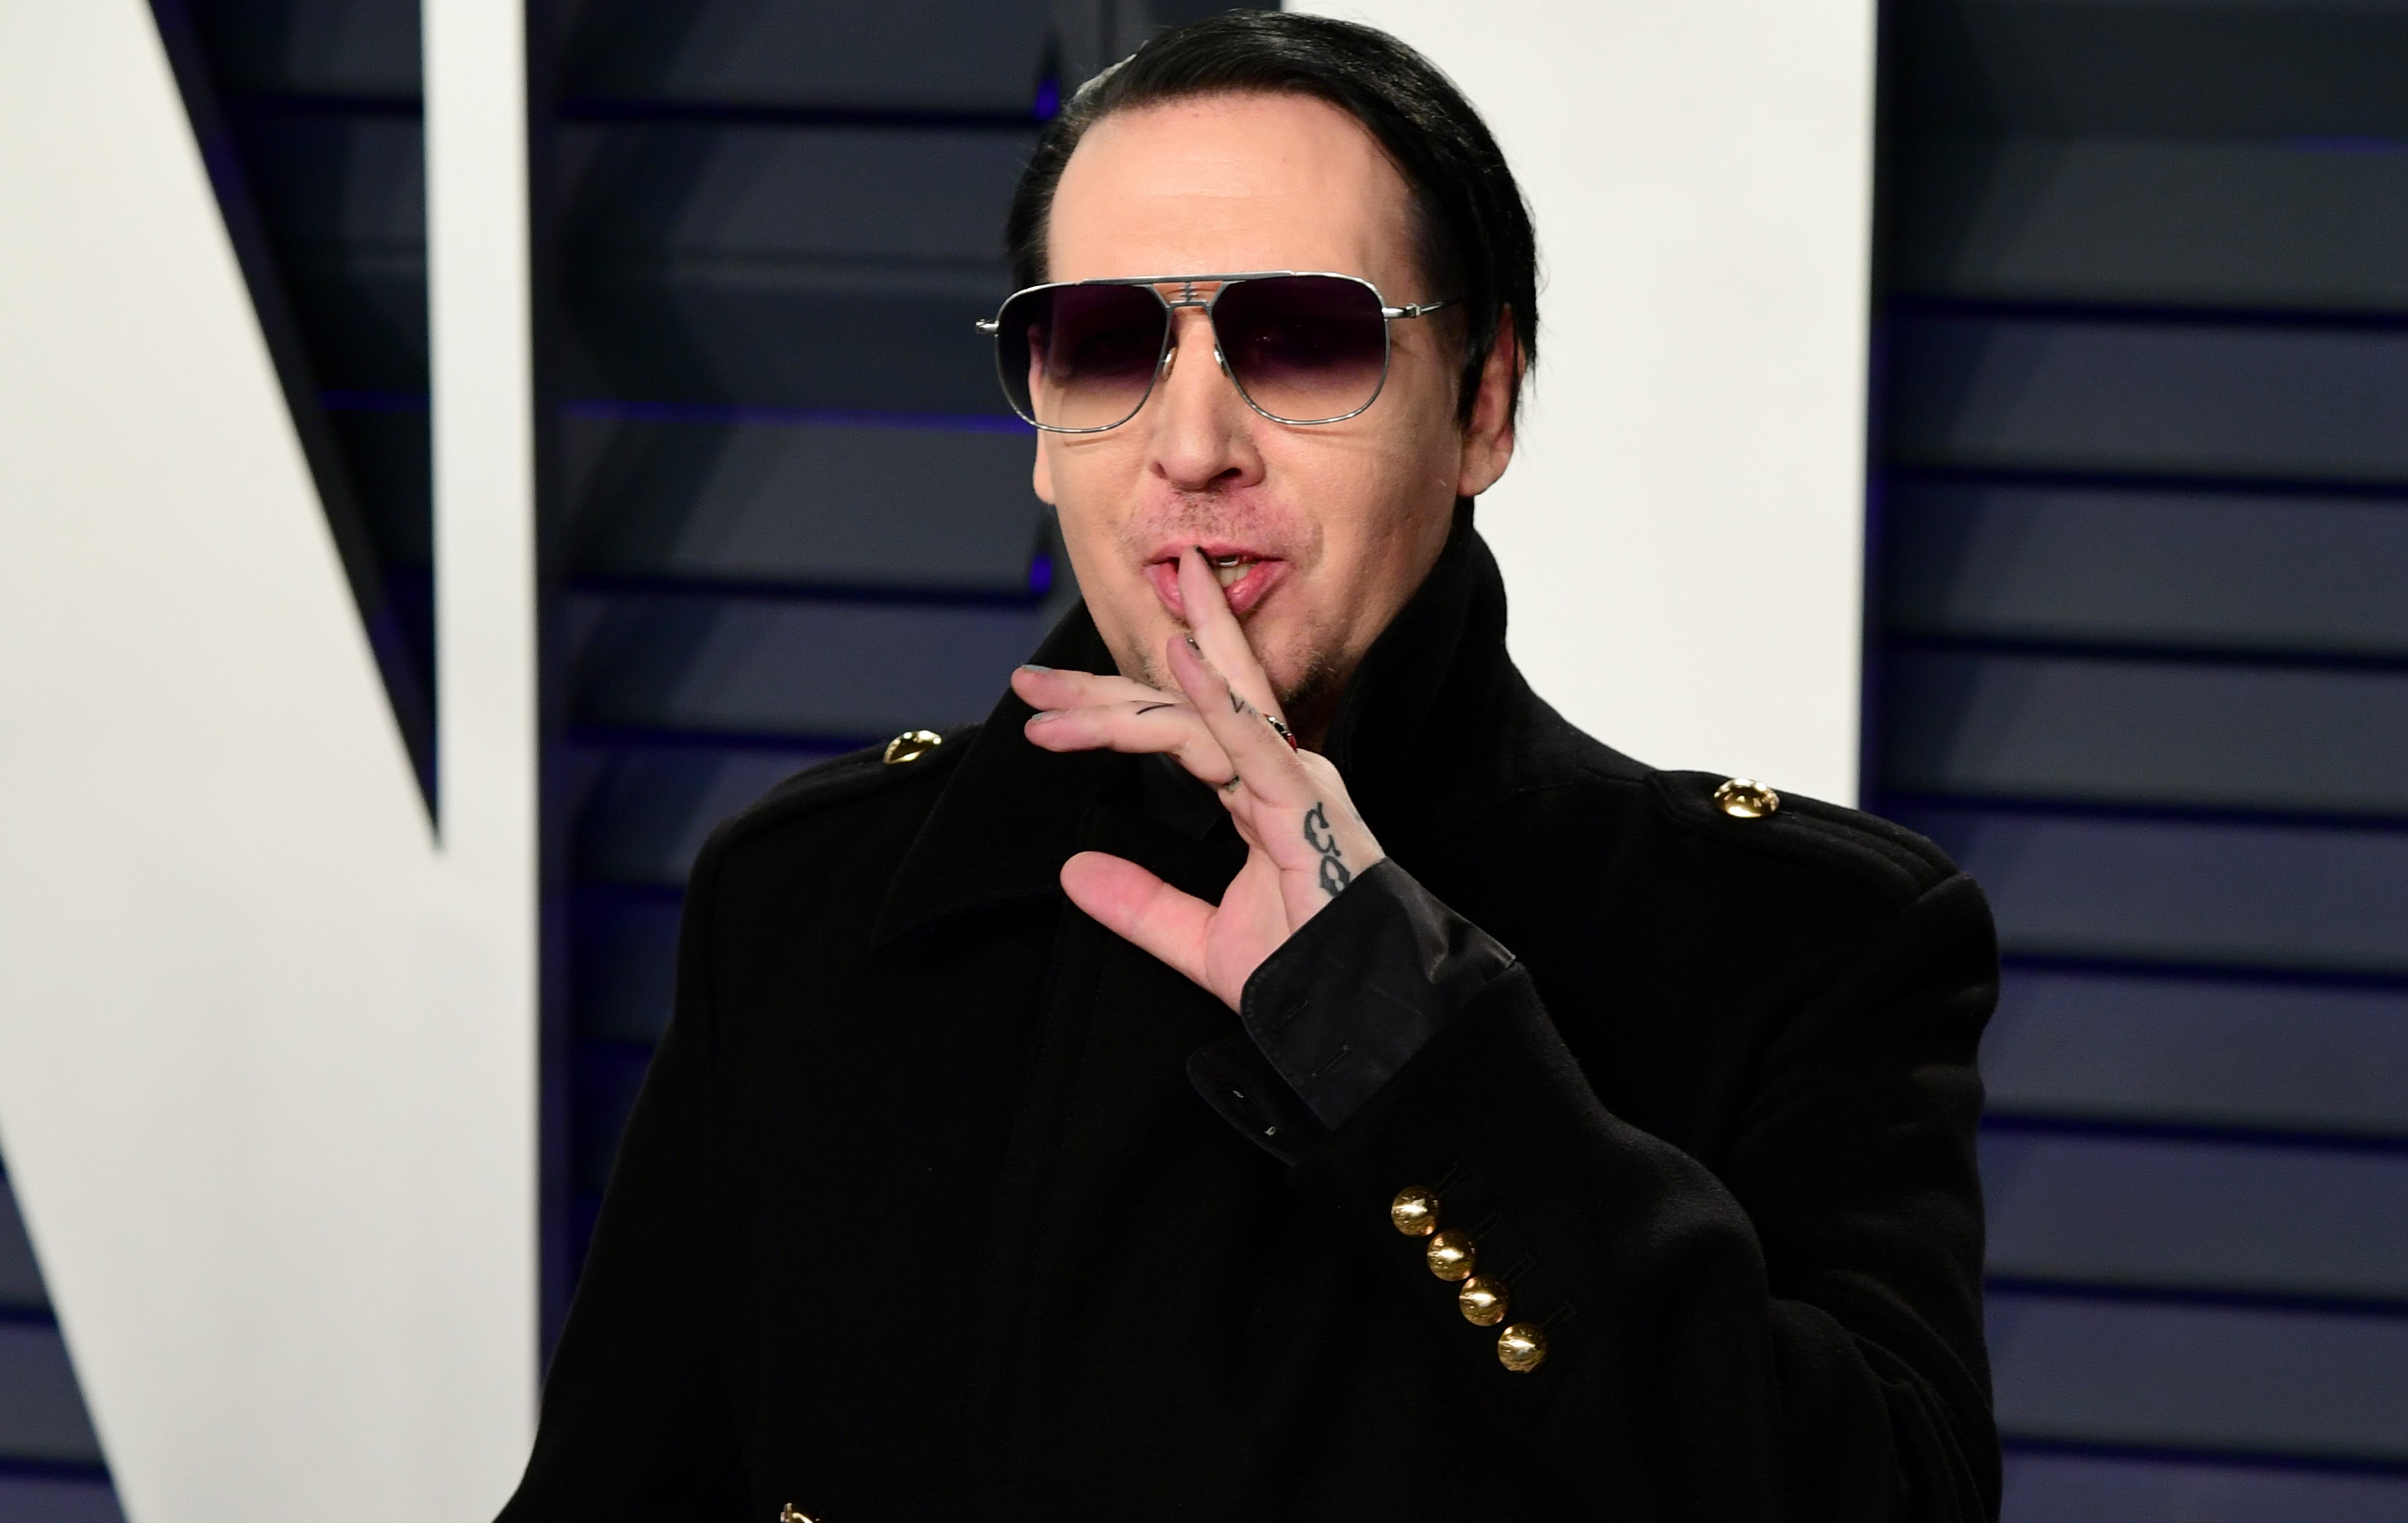 Marilyn Manson elment a bántalmazásáról szóló film premierjére - Blikk